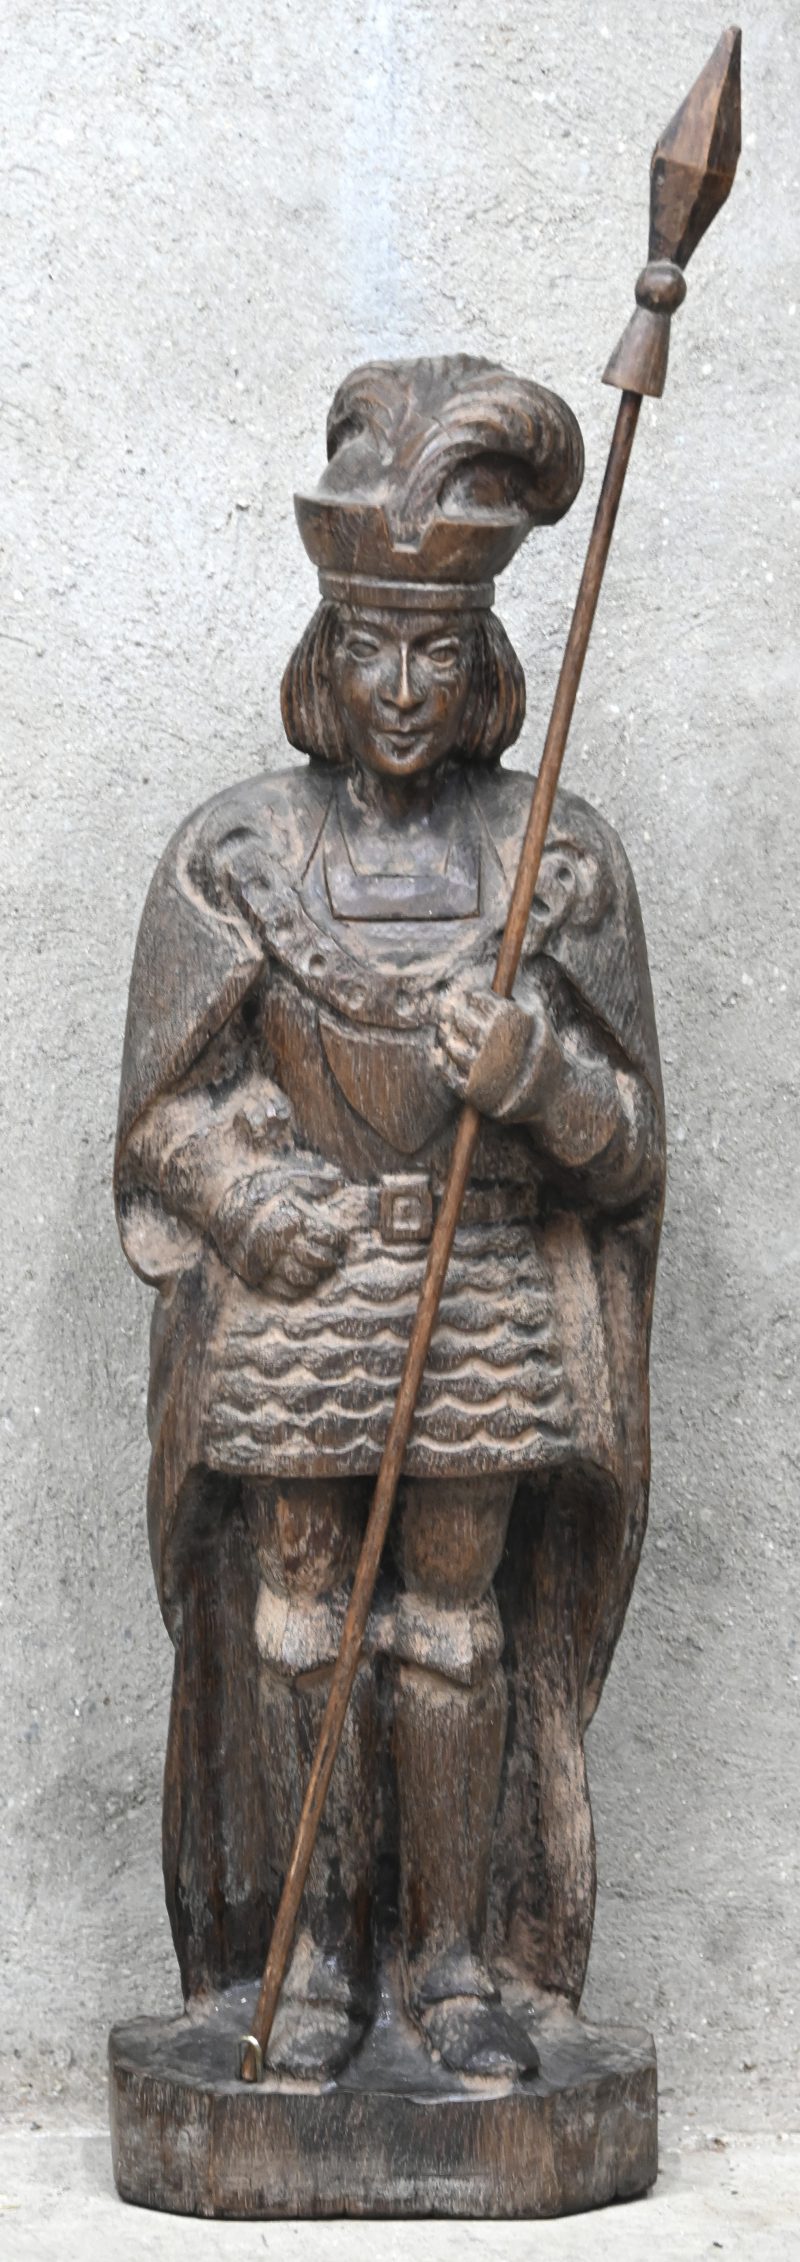 Een houten beeld van een middeleeuwse soldaat met lans.